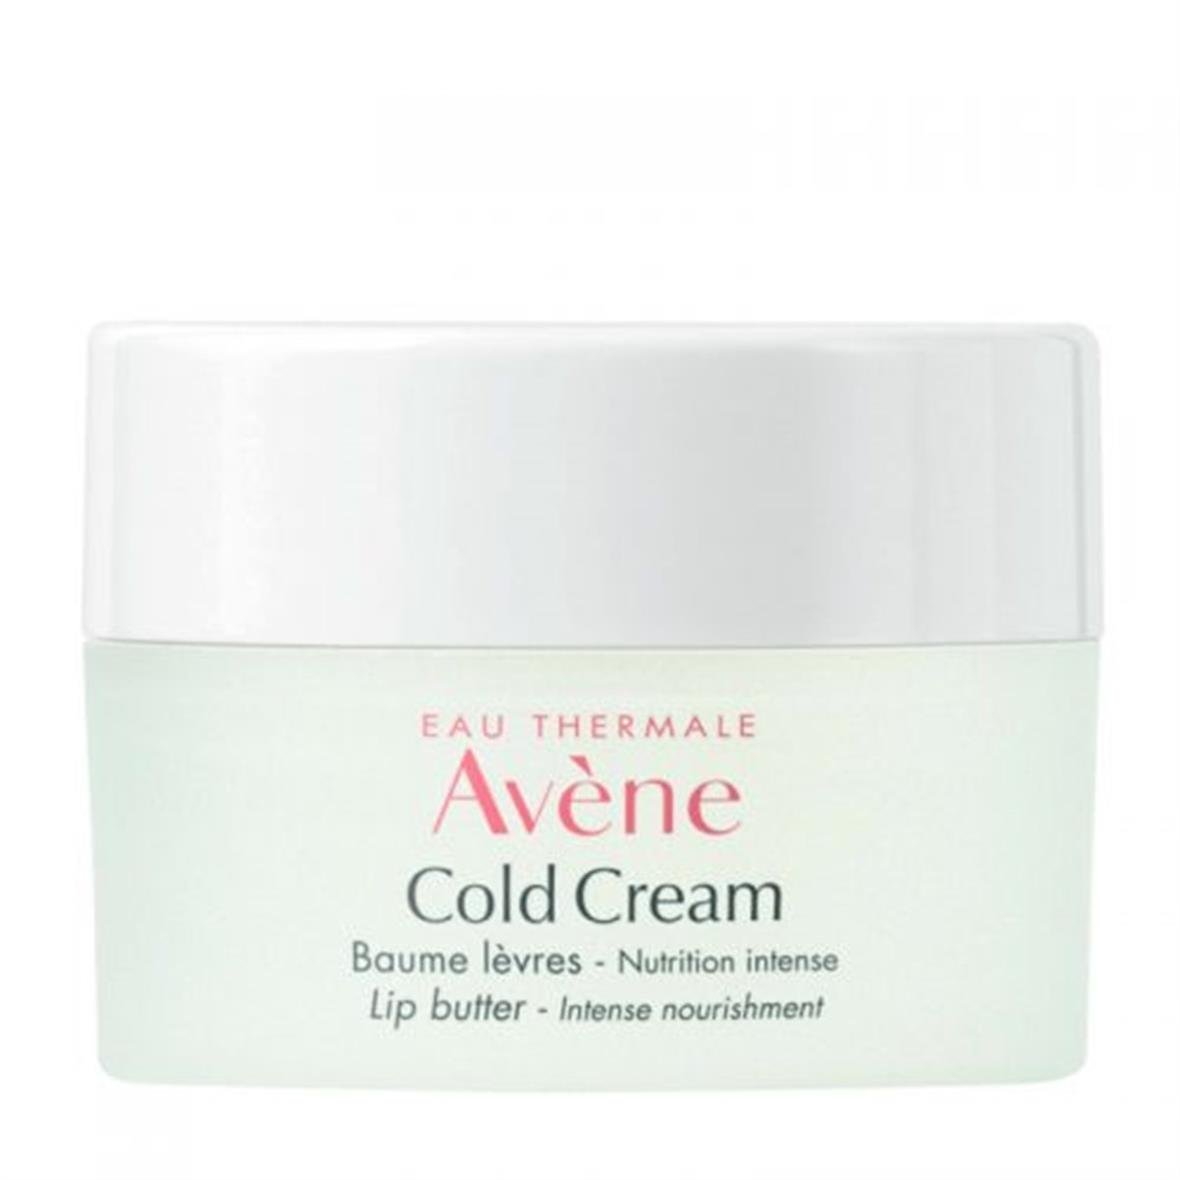 Avene Cold Cream Dudak Balmı 10 ml Eczasepeti.com'da En Uygun Fiyatlar ve  Yorumlar